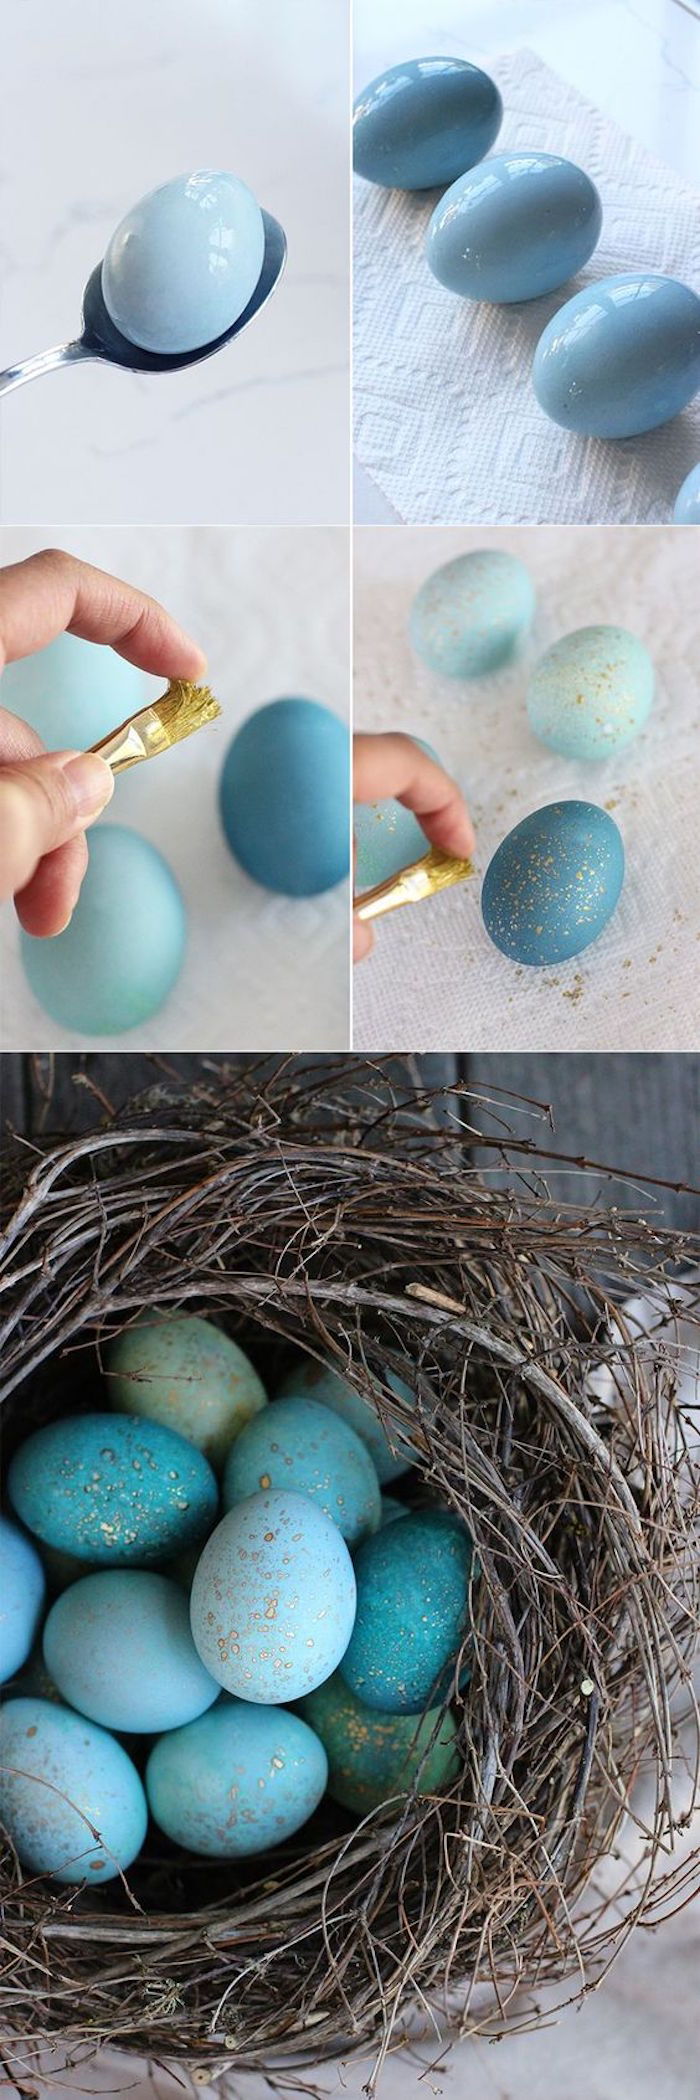 DIY dekoration idé, påsk ägg i blått med användning, påsk häst